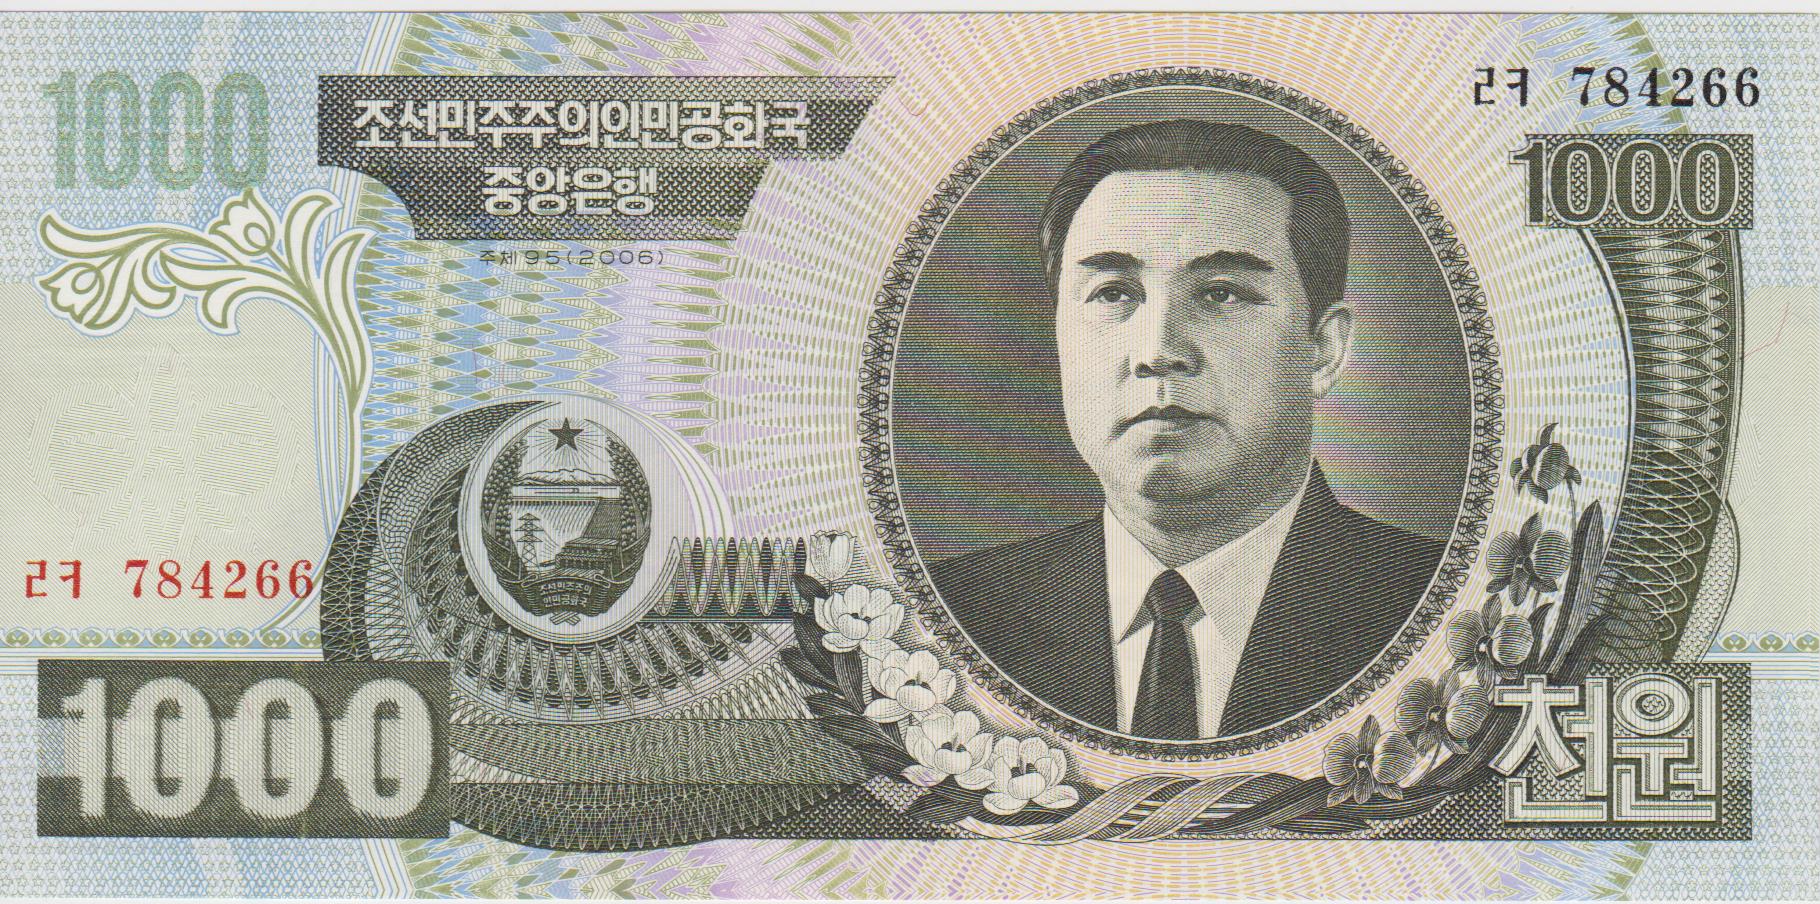 An obsolete North Korean 1000-won bank note